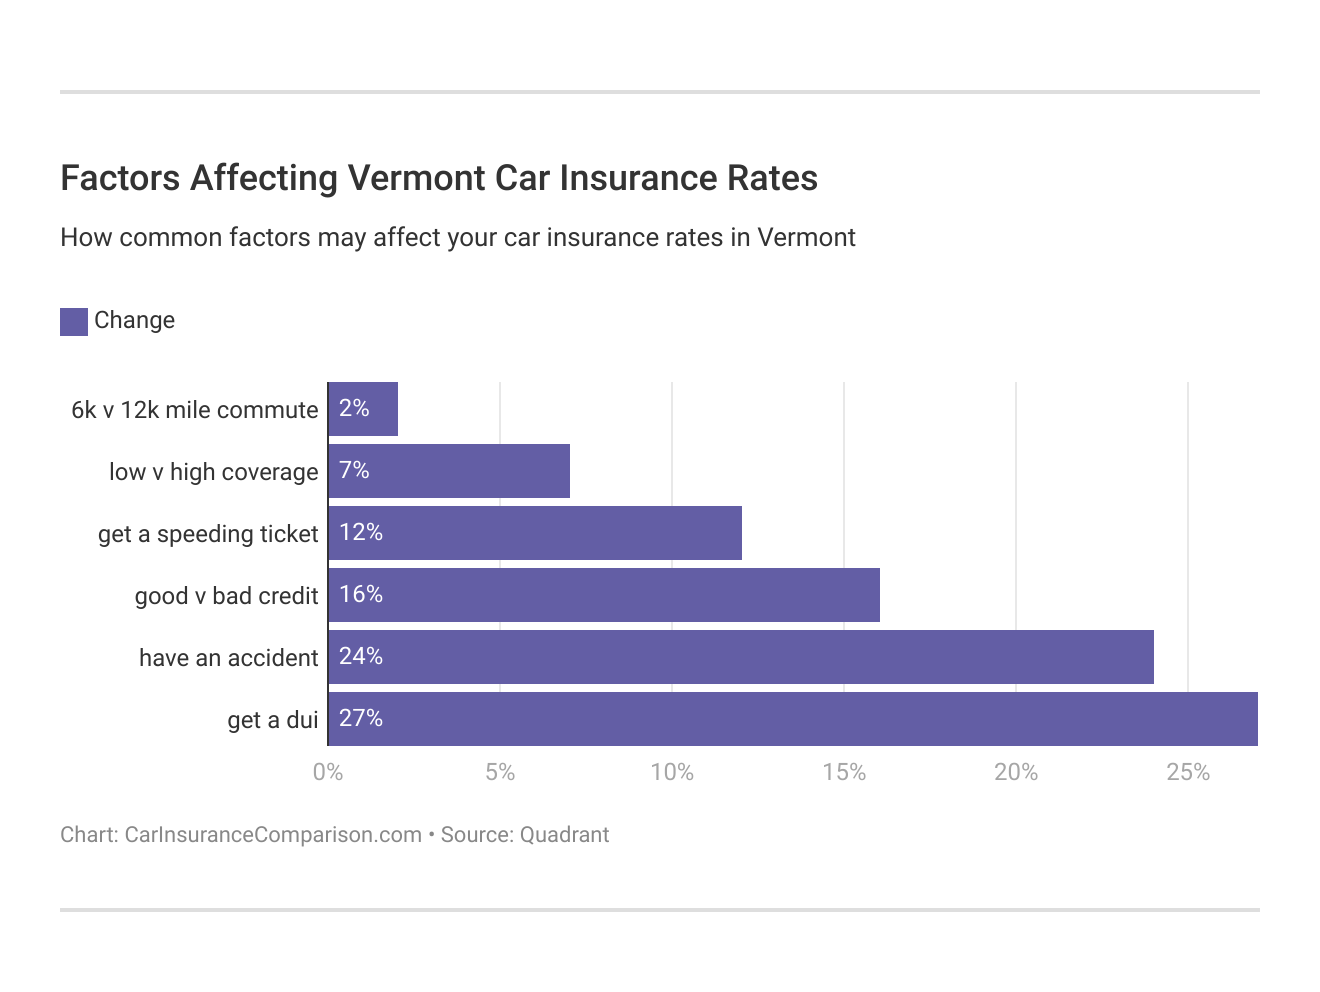 <h3>Factors Affecting Vermont Car Insurance Rates</h3>